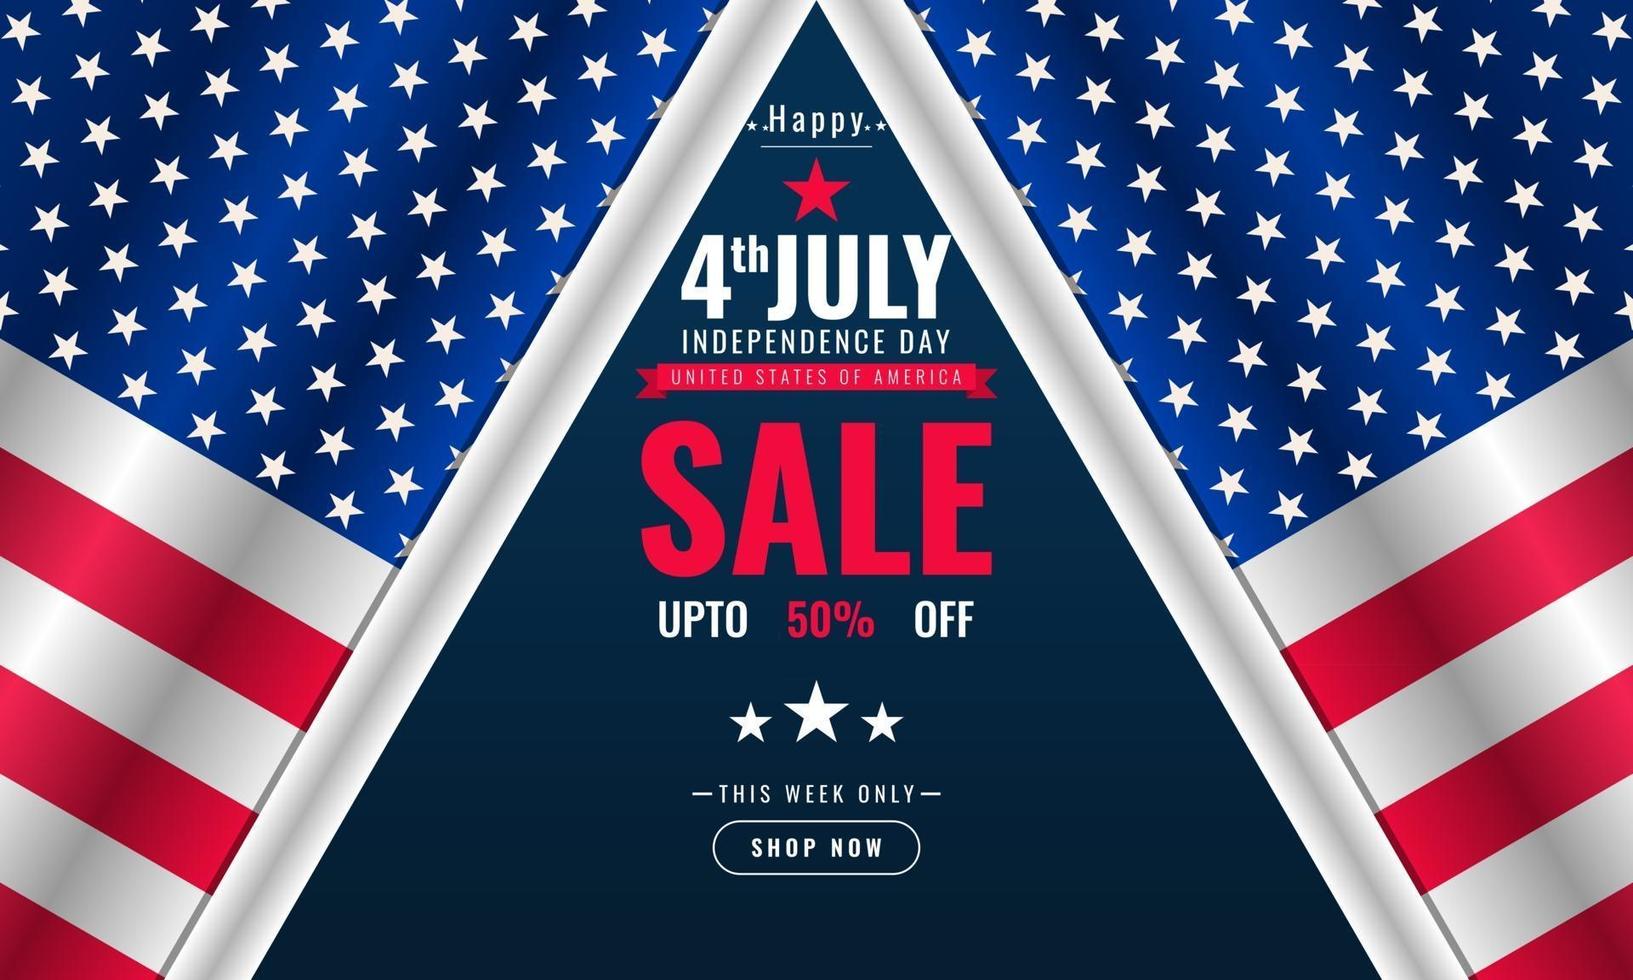 Modello di banner pubblicitario di promozione delle vendite di sfondo del giorno dell'indipendenza del 4 luglio con design della bandiera americana vettore